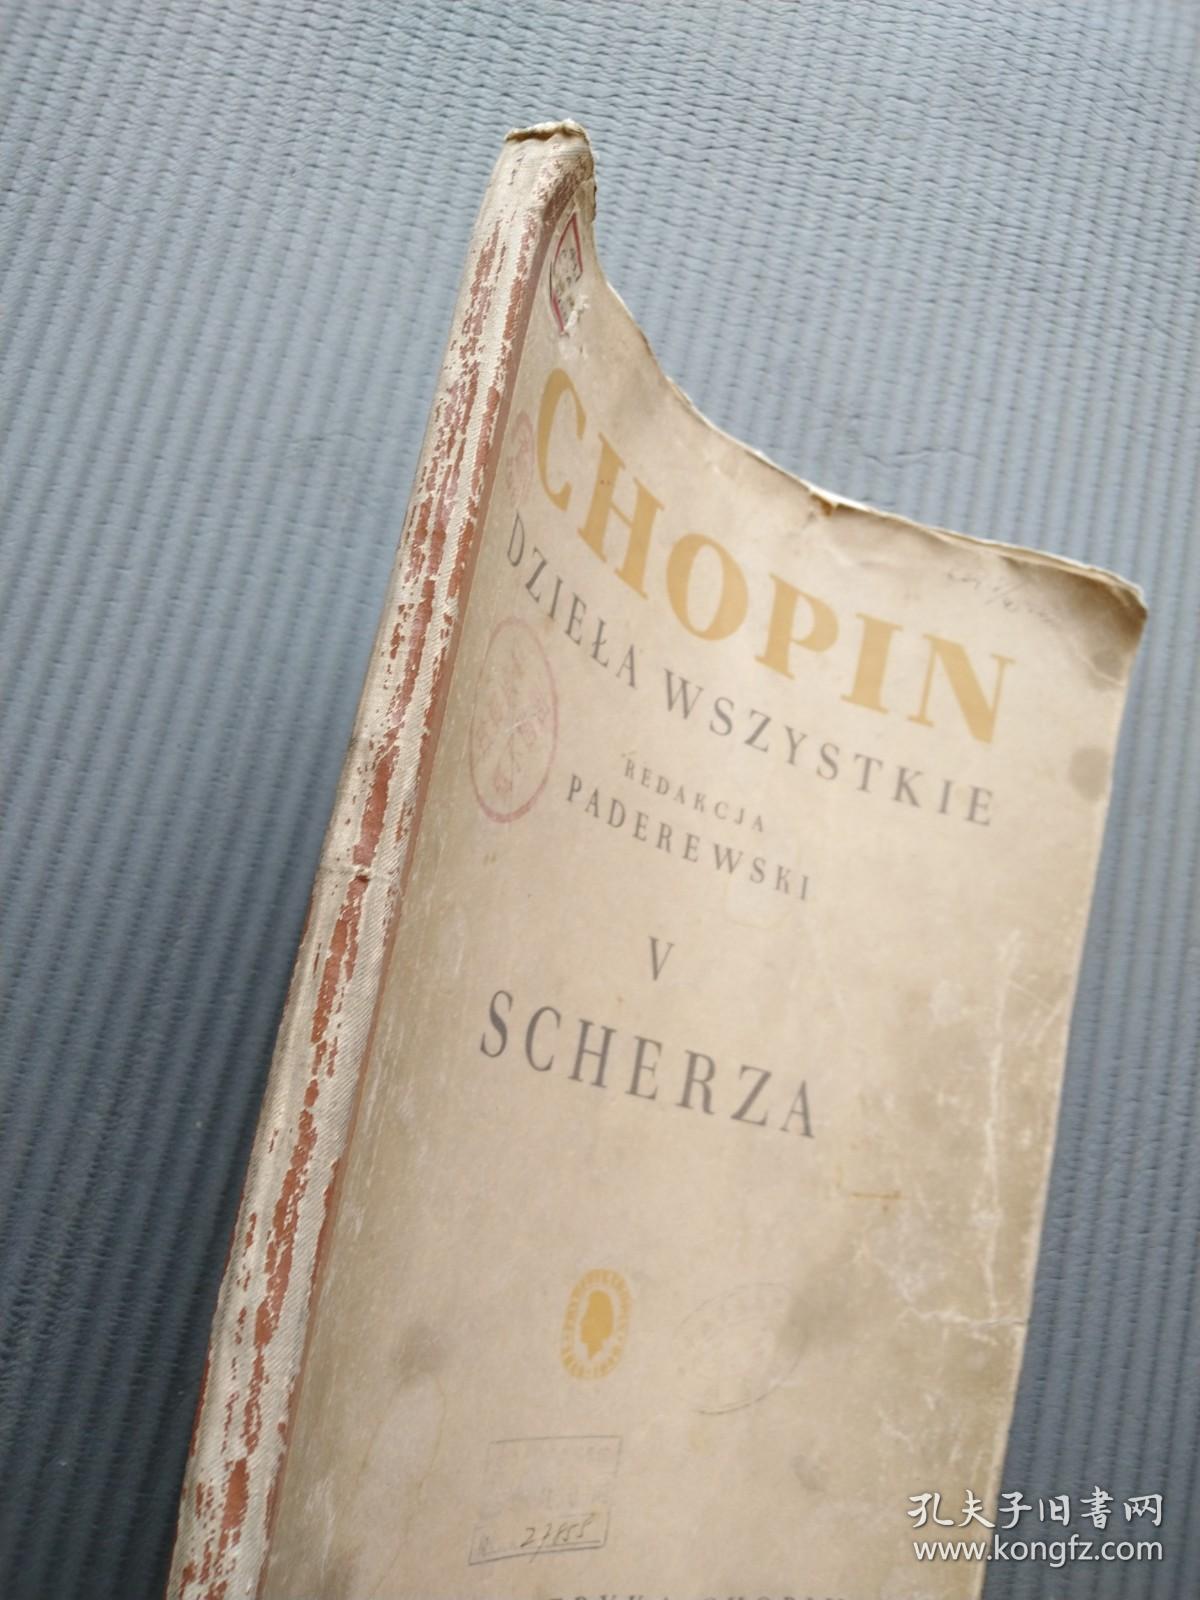 老乐谱：chopin dziela wszystkie  V scheza 肖邦全集  第五卷.